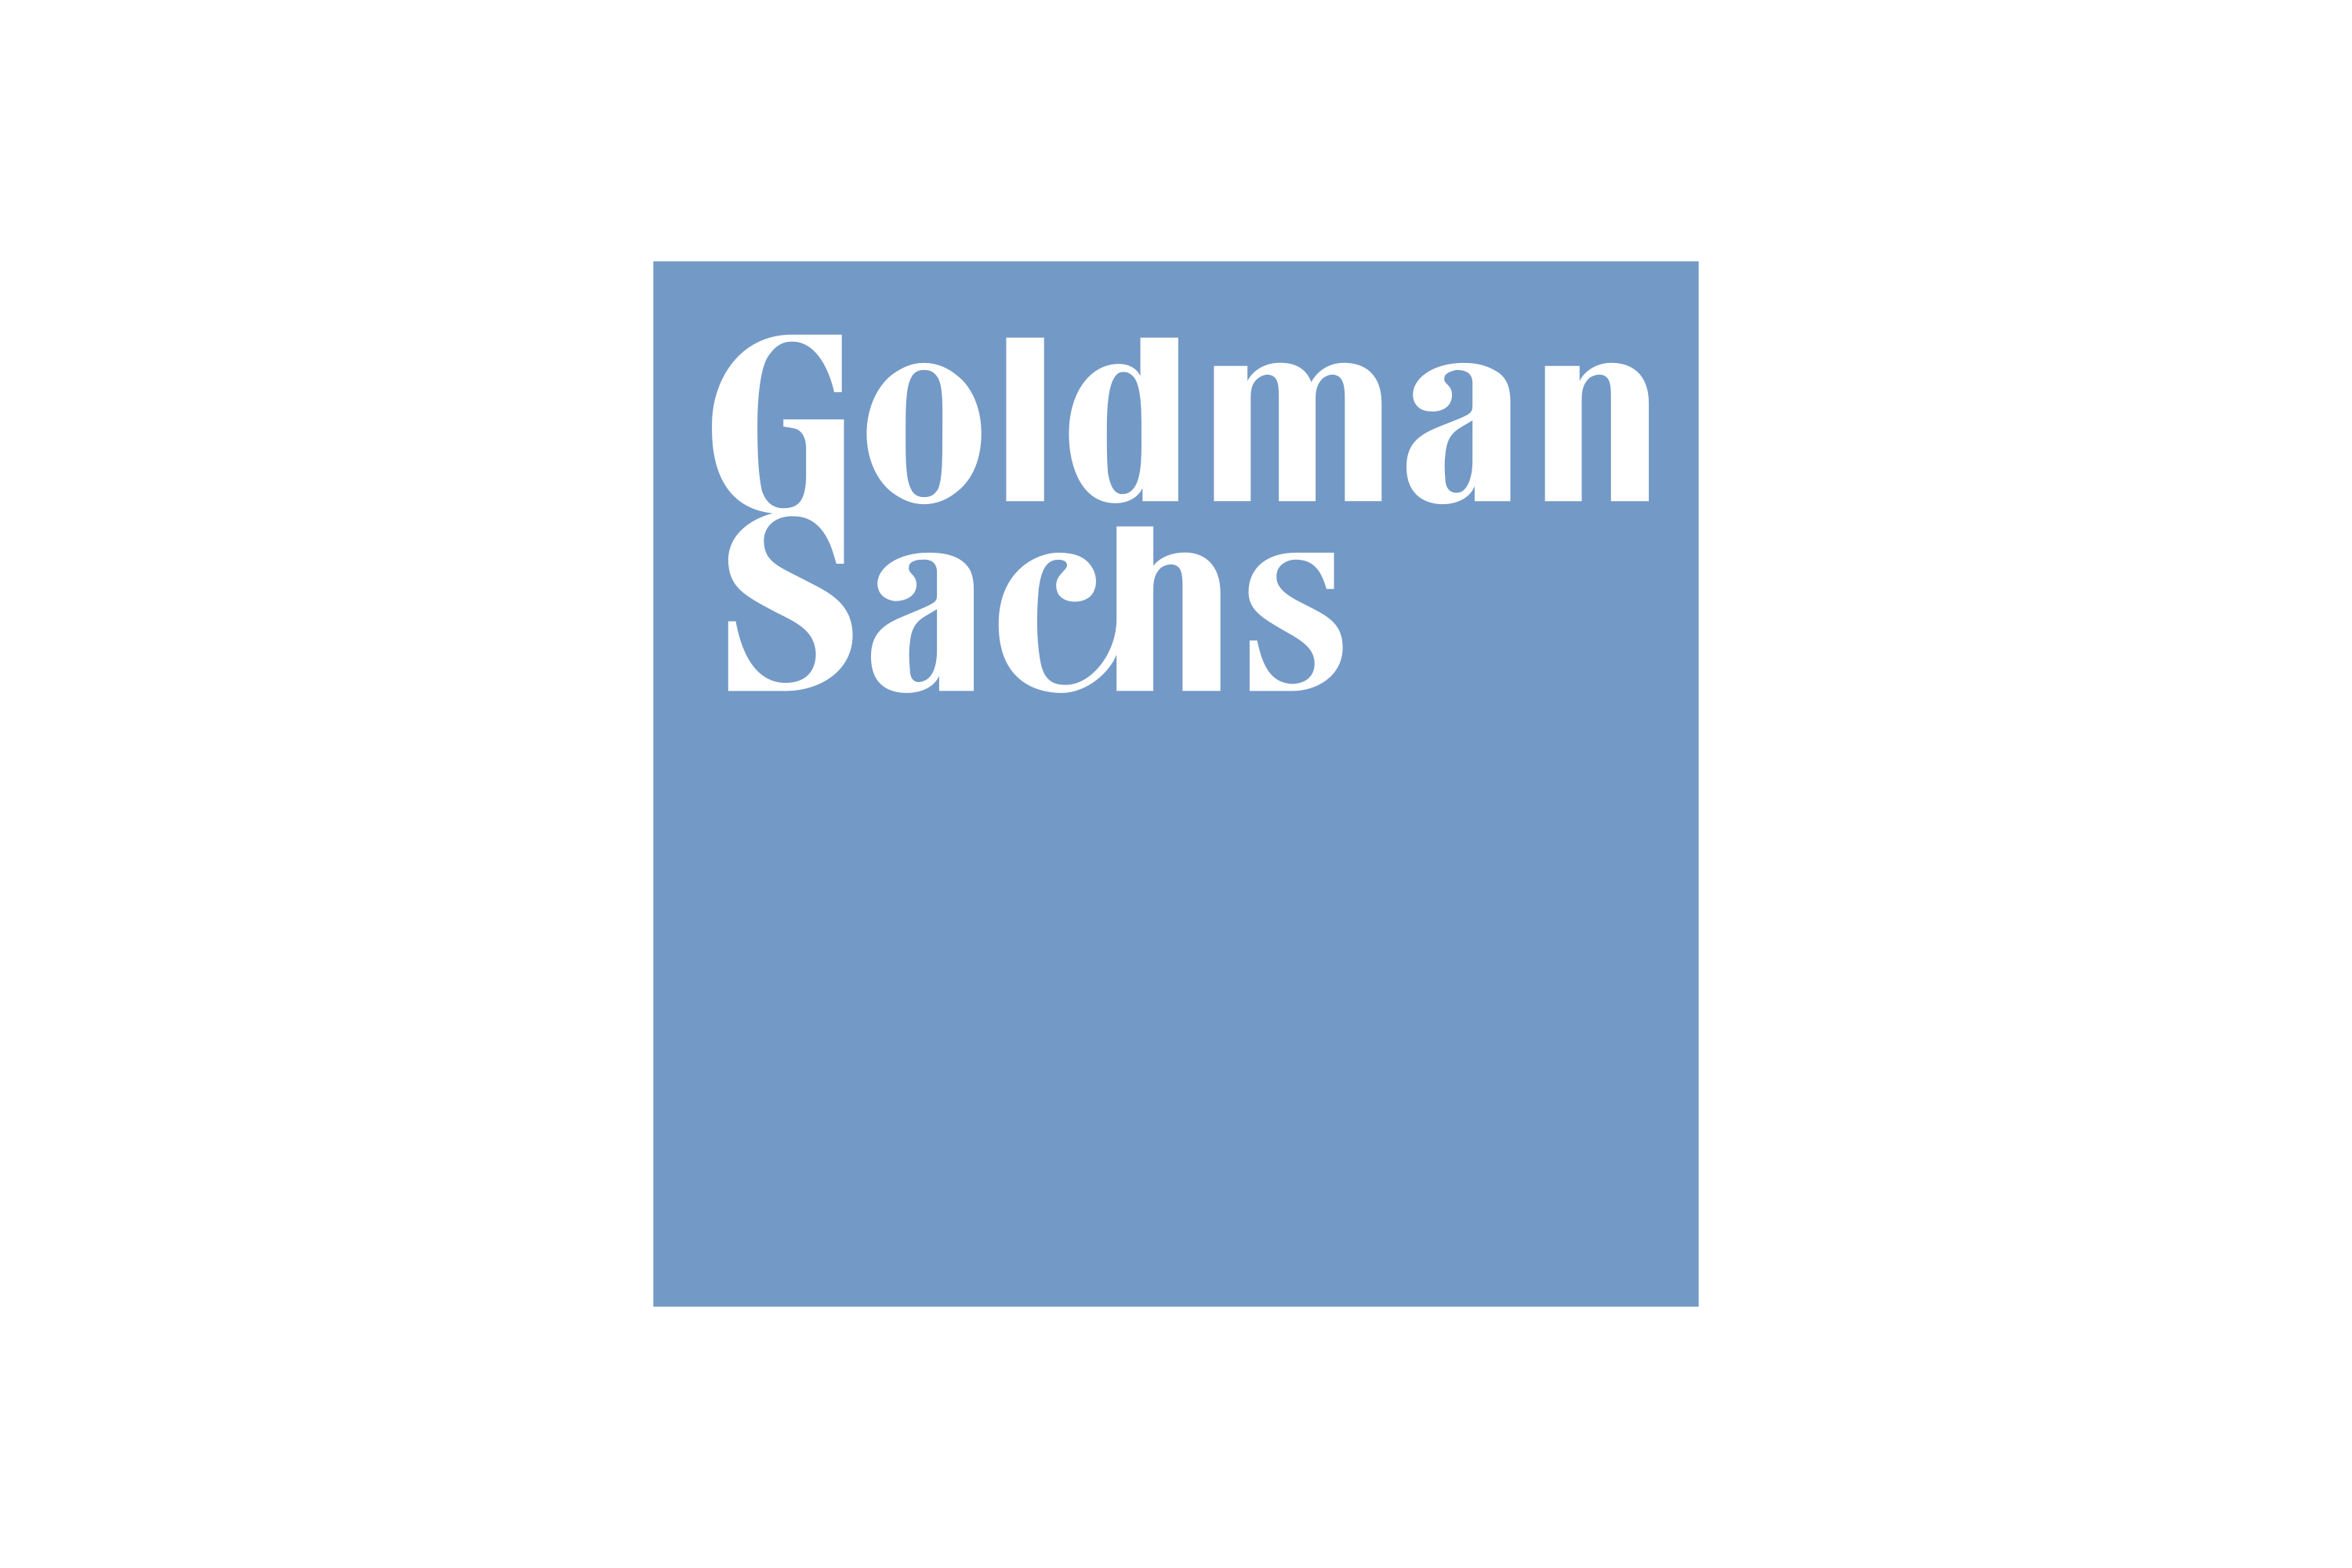 Download Goldman Sachs Logo in SVG Vector or PNG File Format - Logo.wine